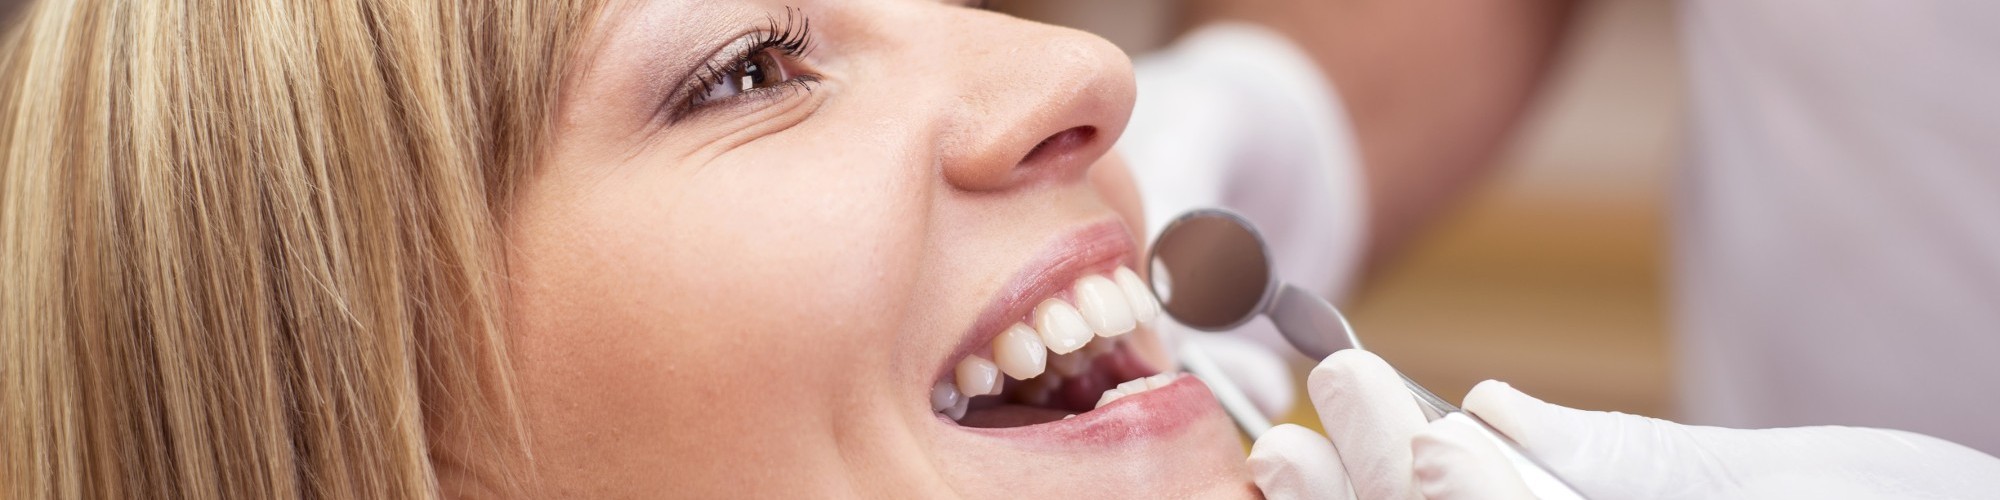 Family Dental Care Teeth Whitening Dentist Appleton, WI